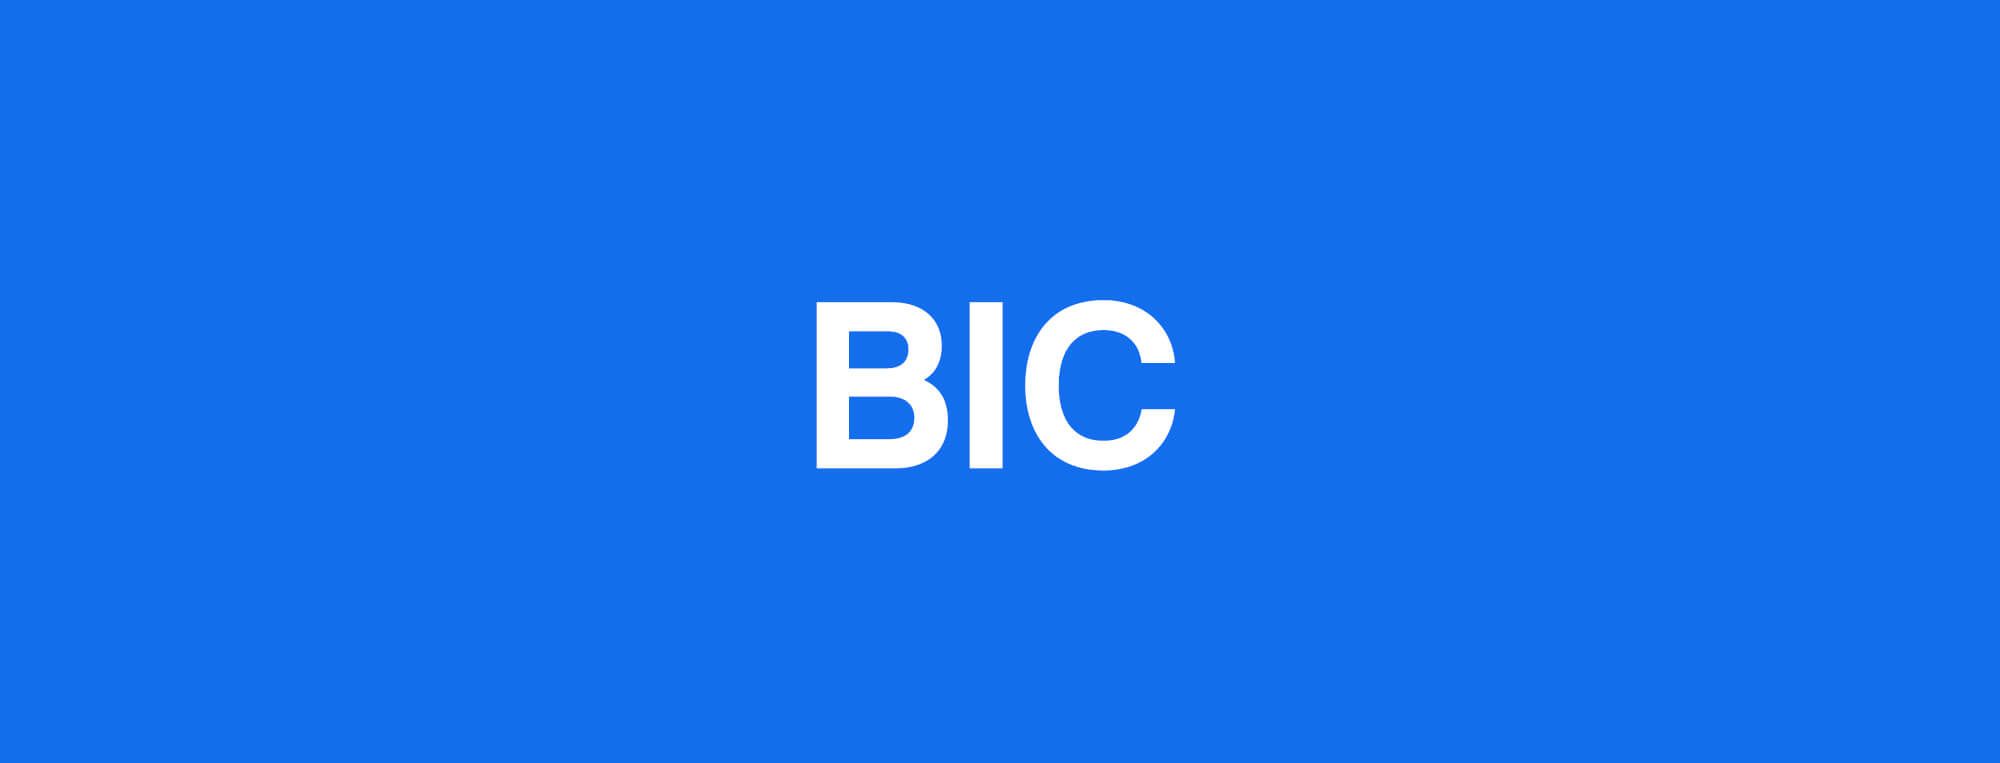 BIC-kod (SWIFT) – Vad är en BIC-kod?